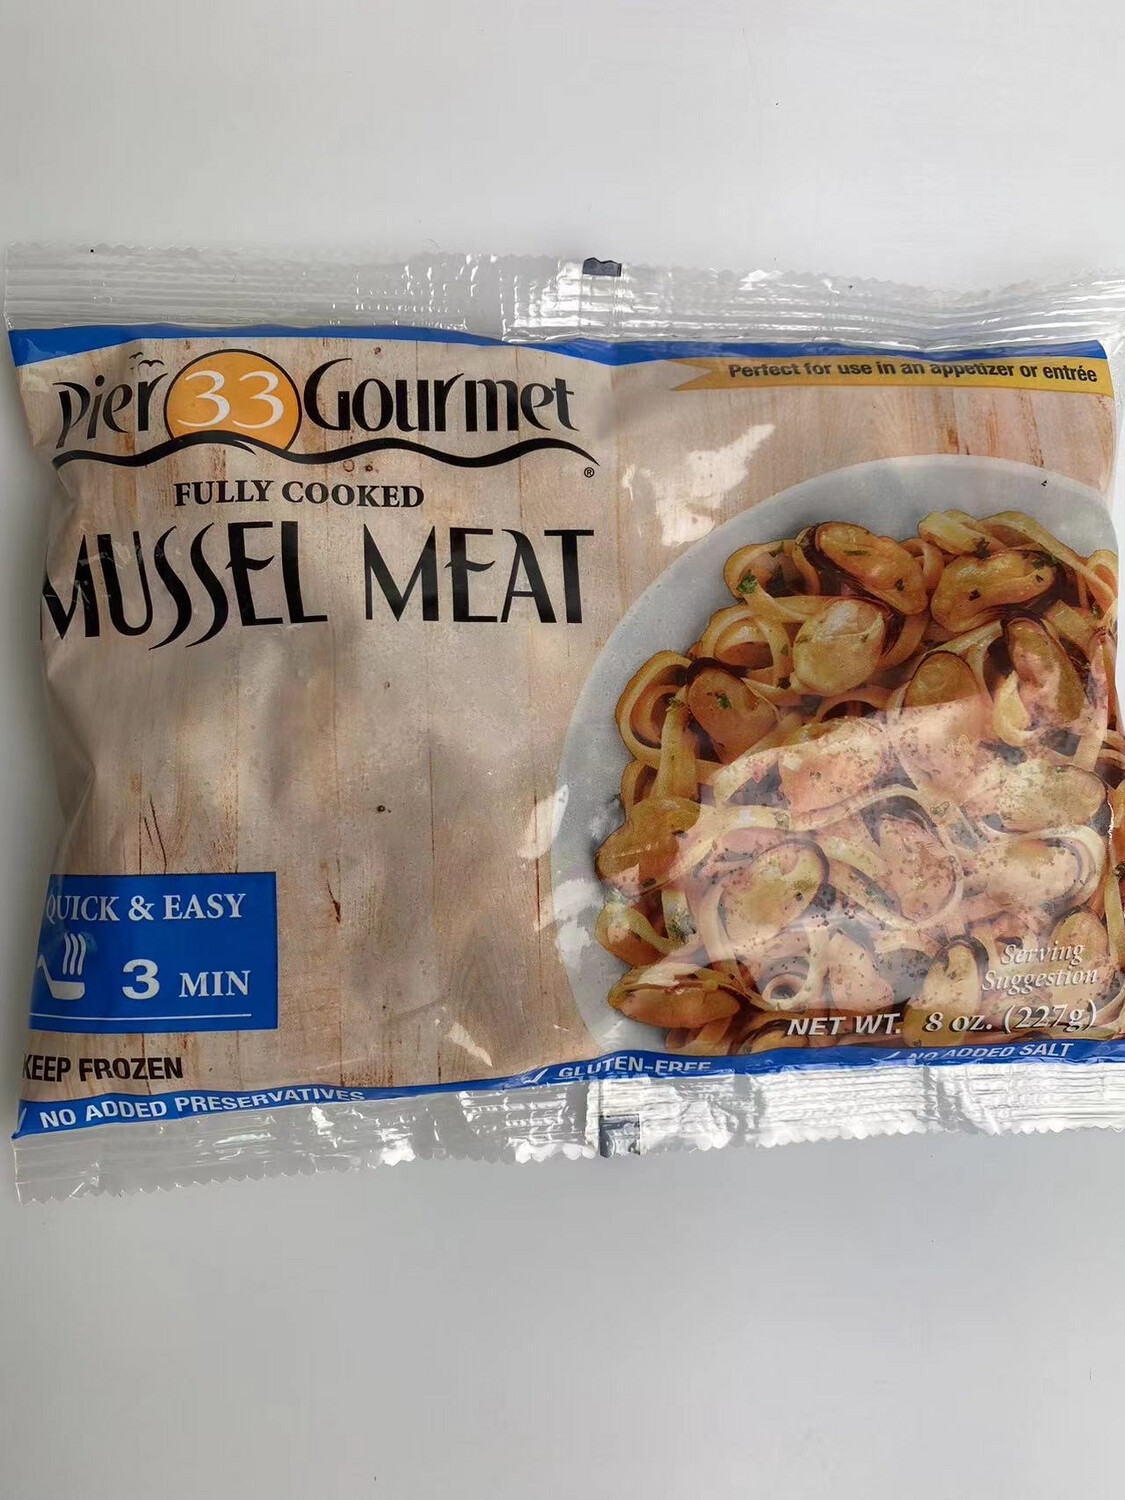 Pier 33 Gourmet Mussel Meat 青口贝肉 8oz